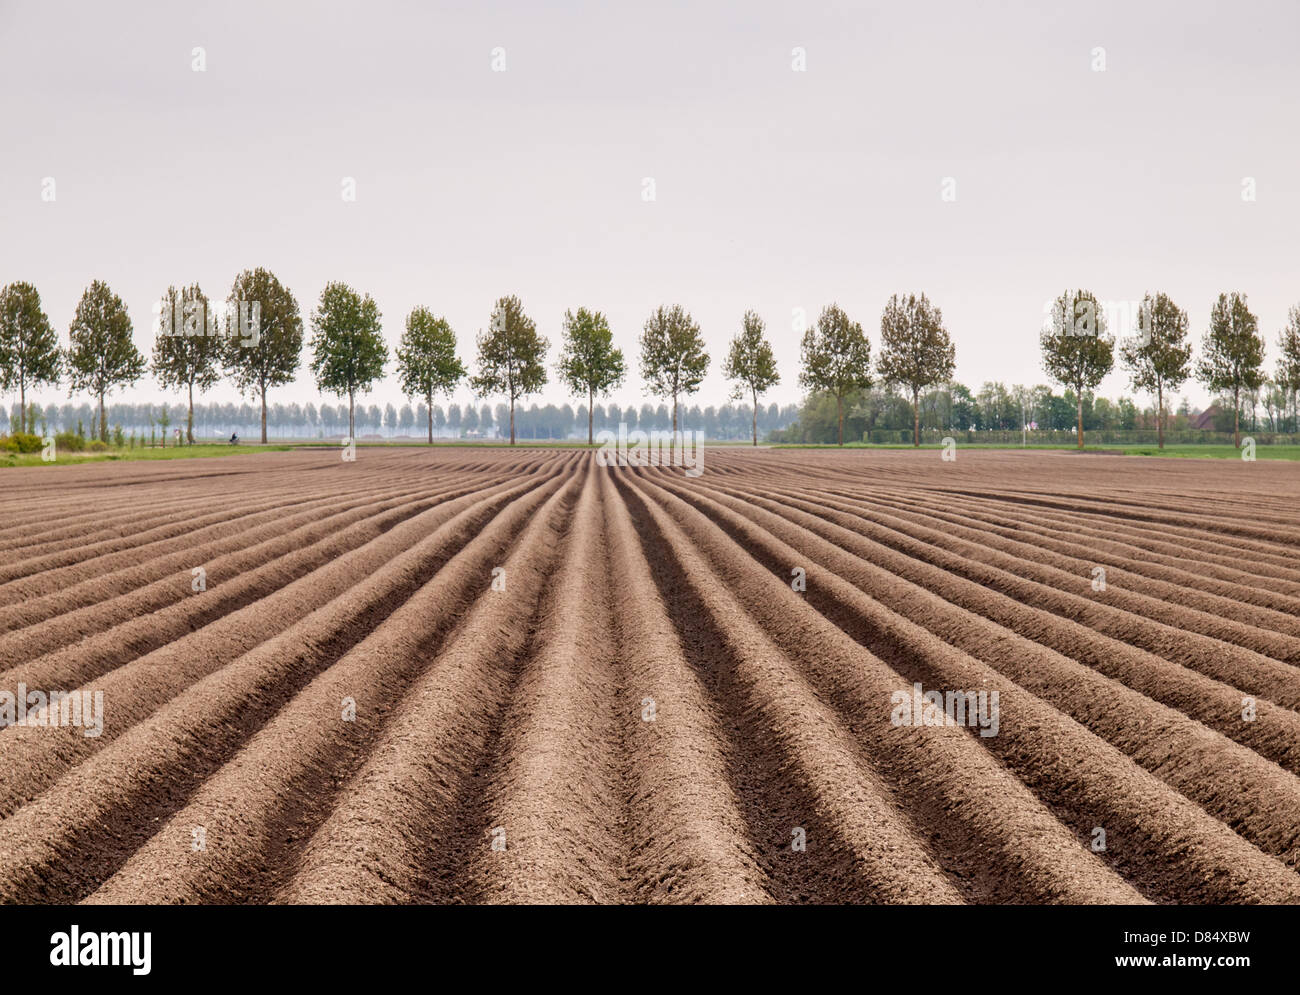 Les crêtes à la terre en champ de pommes de terre au printemps dans un paysage de polders néerlandais Banque D'Images